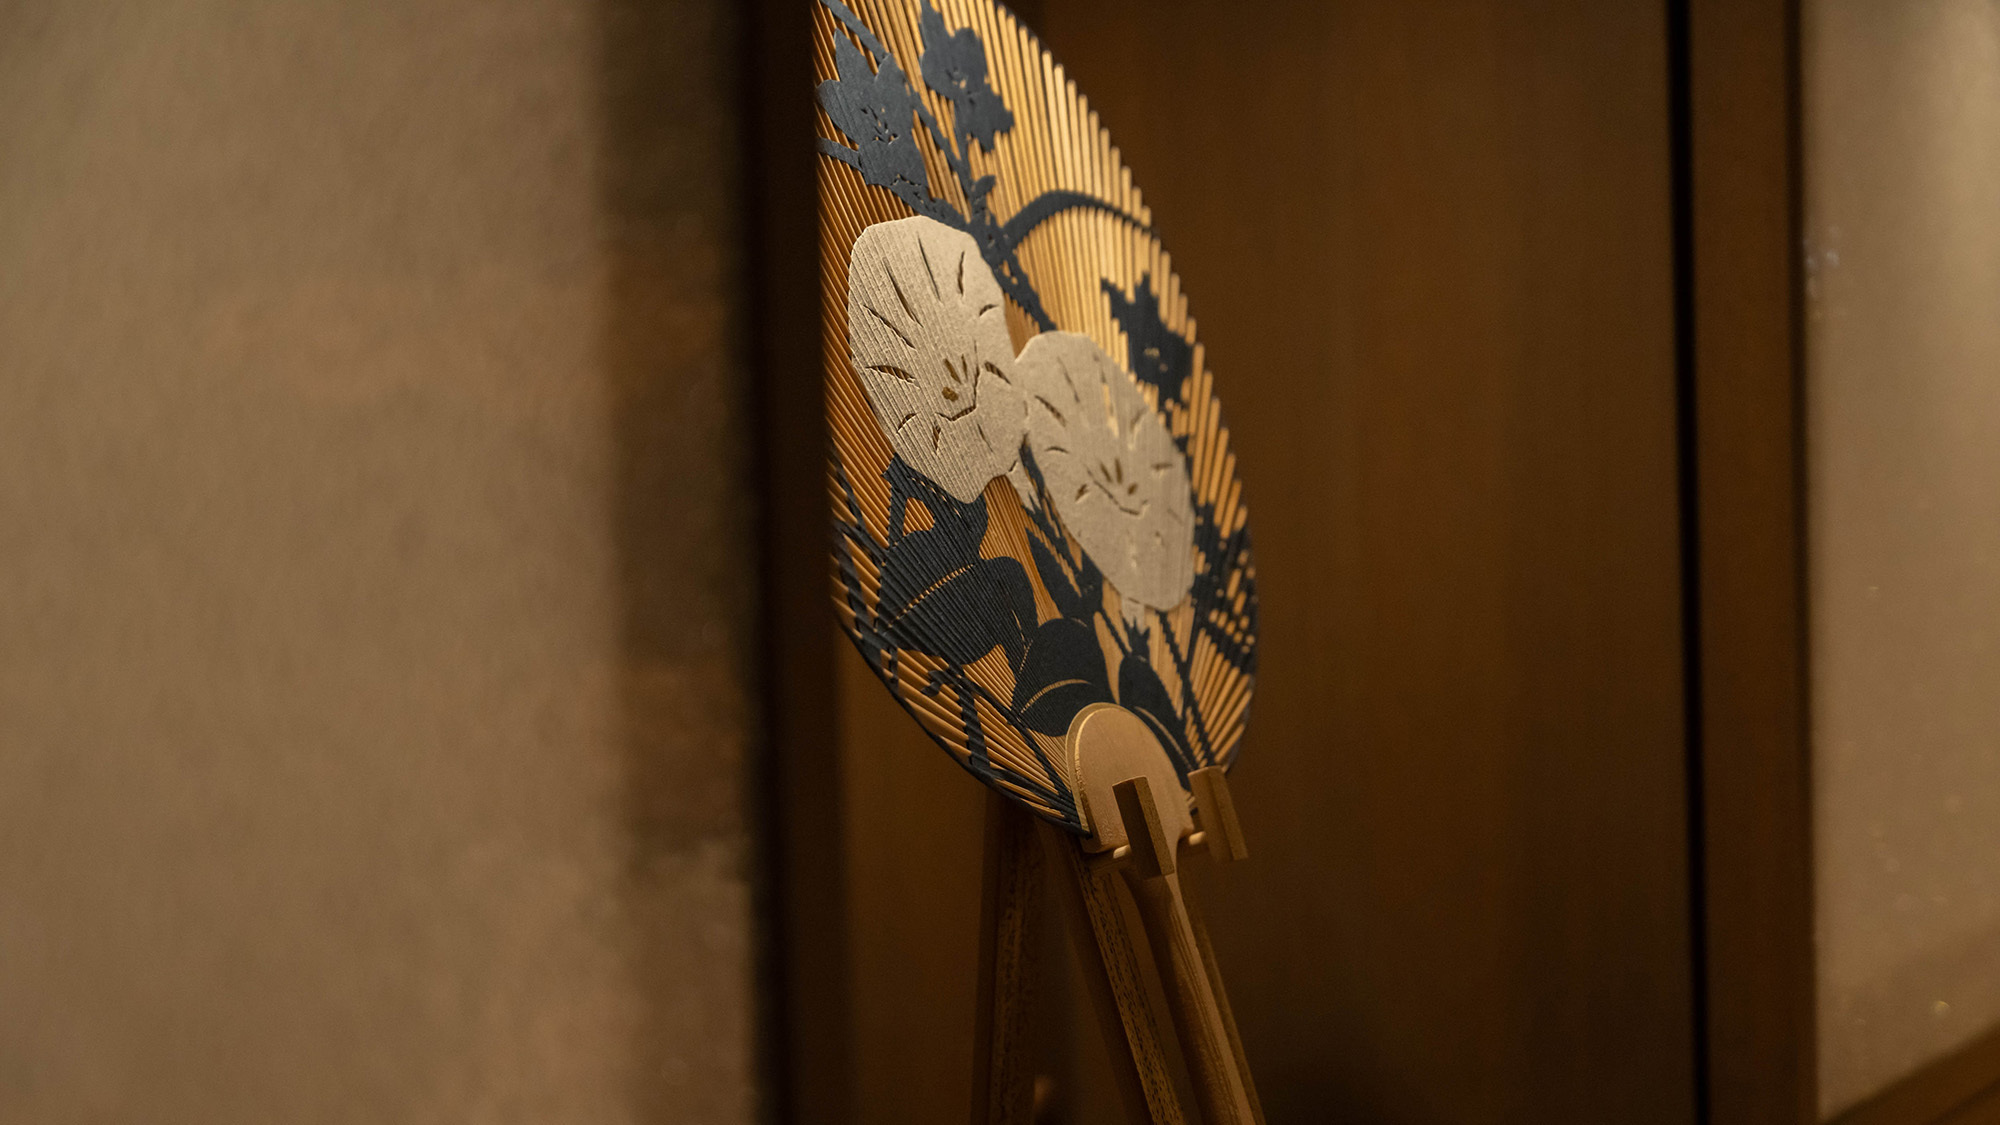 『京うちわ』などさまざまな京都の伝統工芸品がラウンジに展示されています